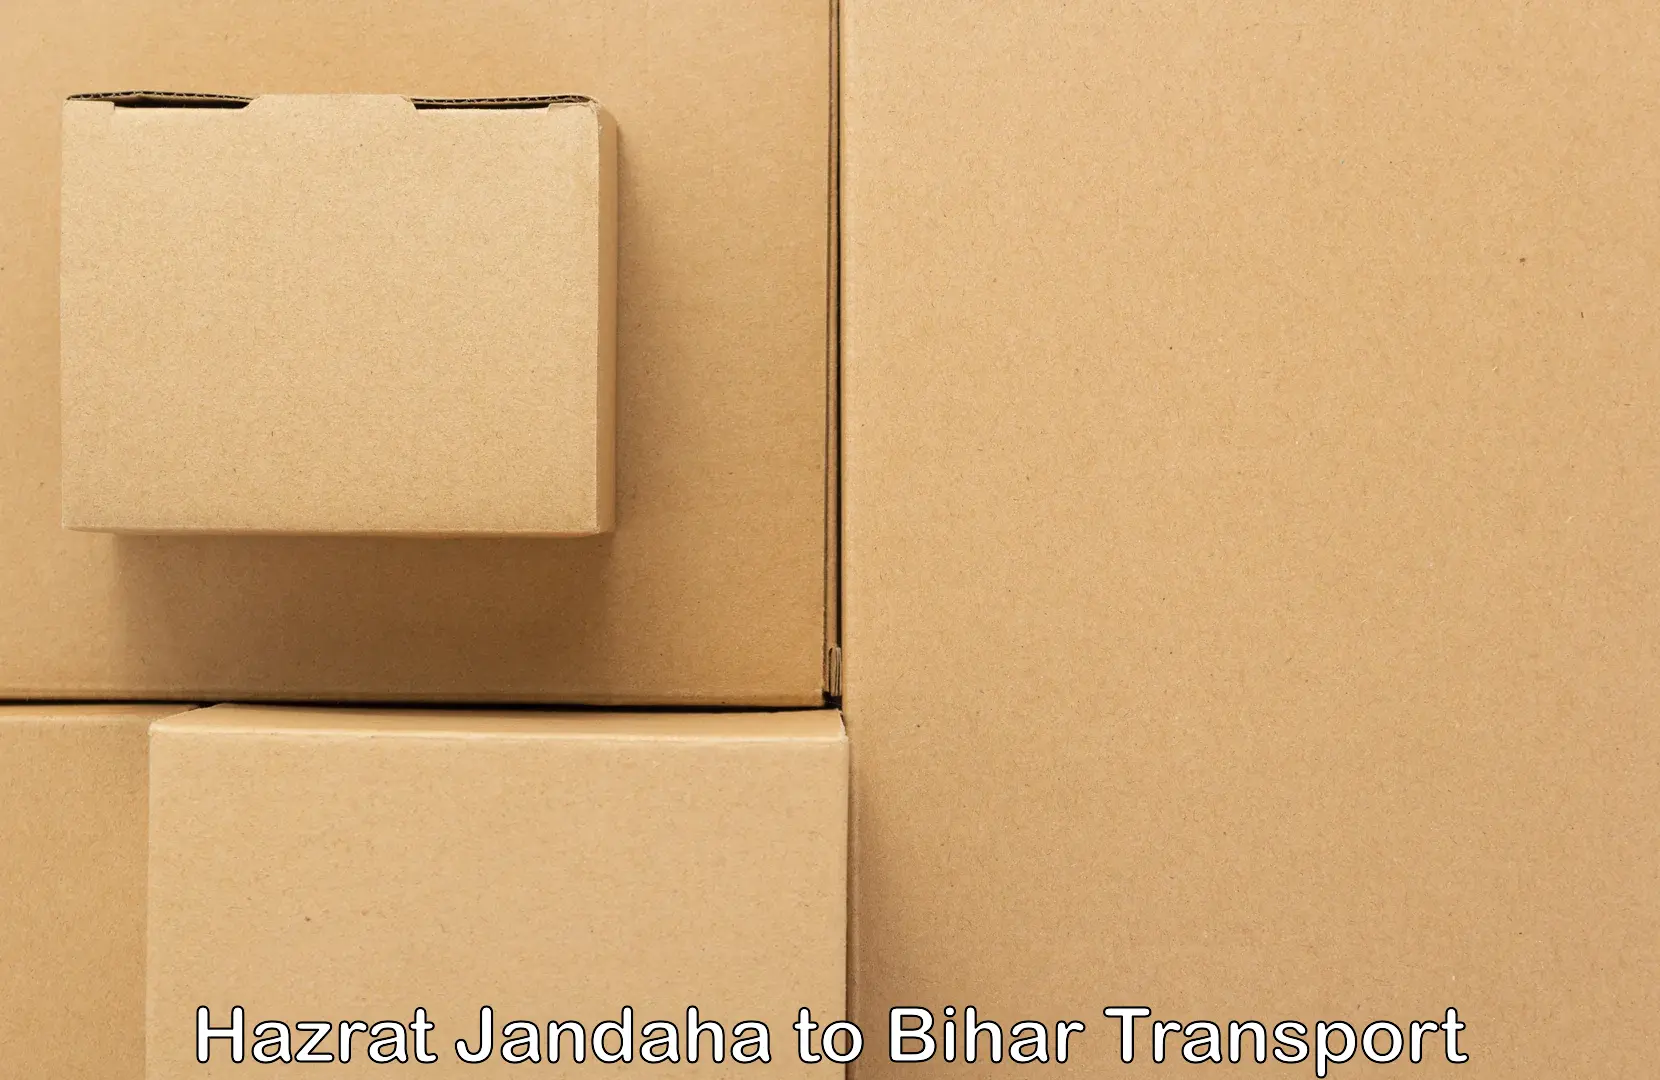 Pick up transport service Hazrat Jandaha to Bikramganj